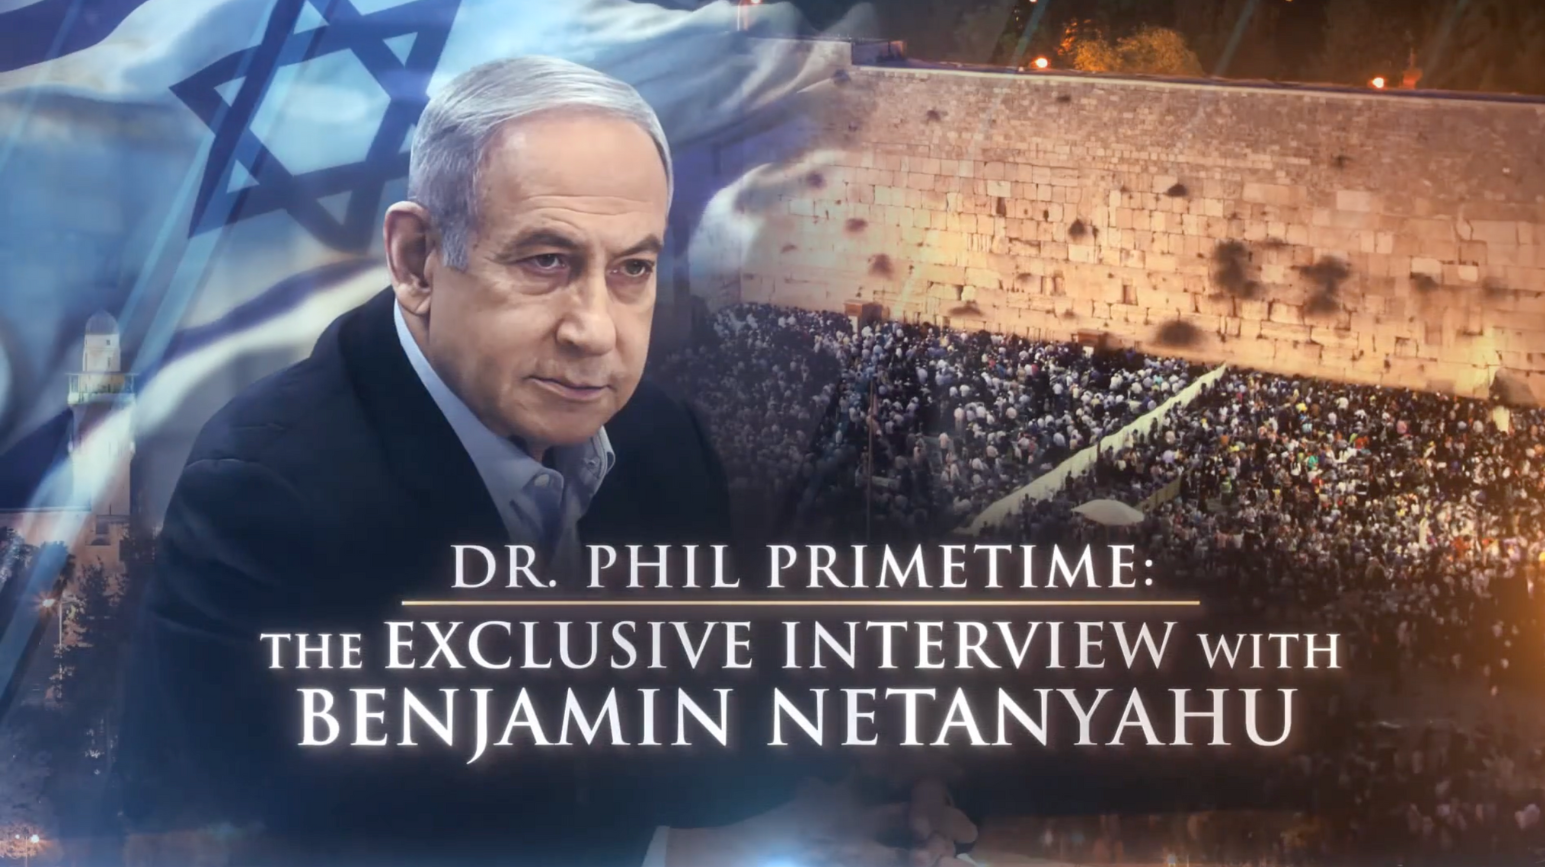 The Exclusive Interview with Benjamin Netanyahu